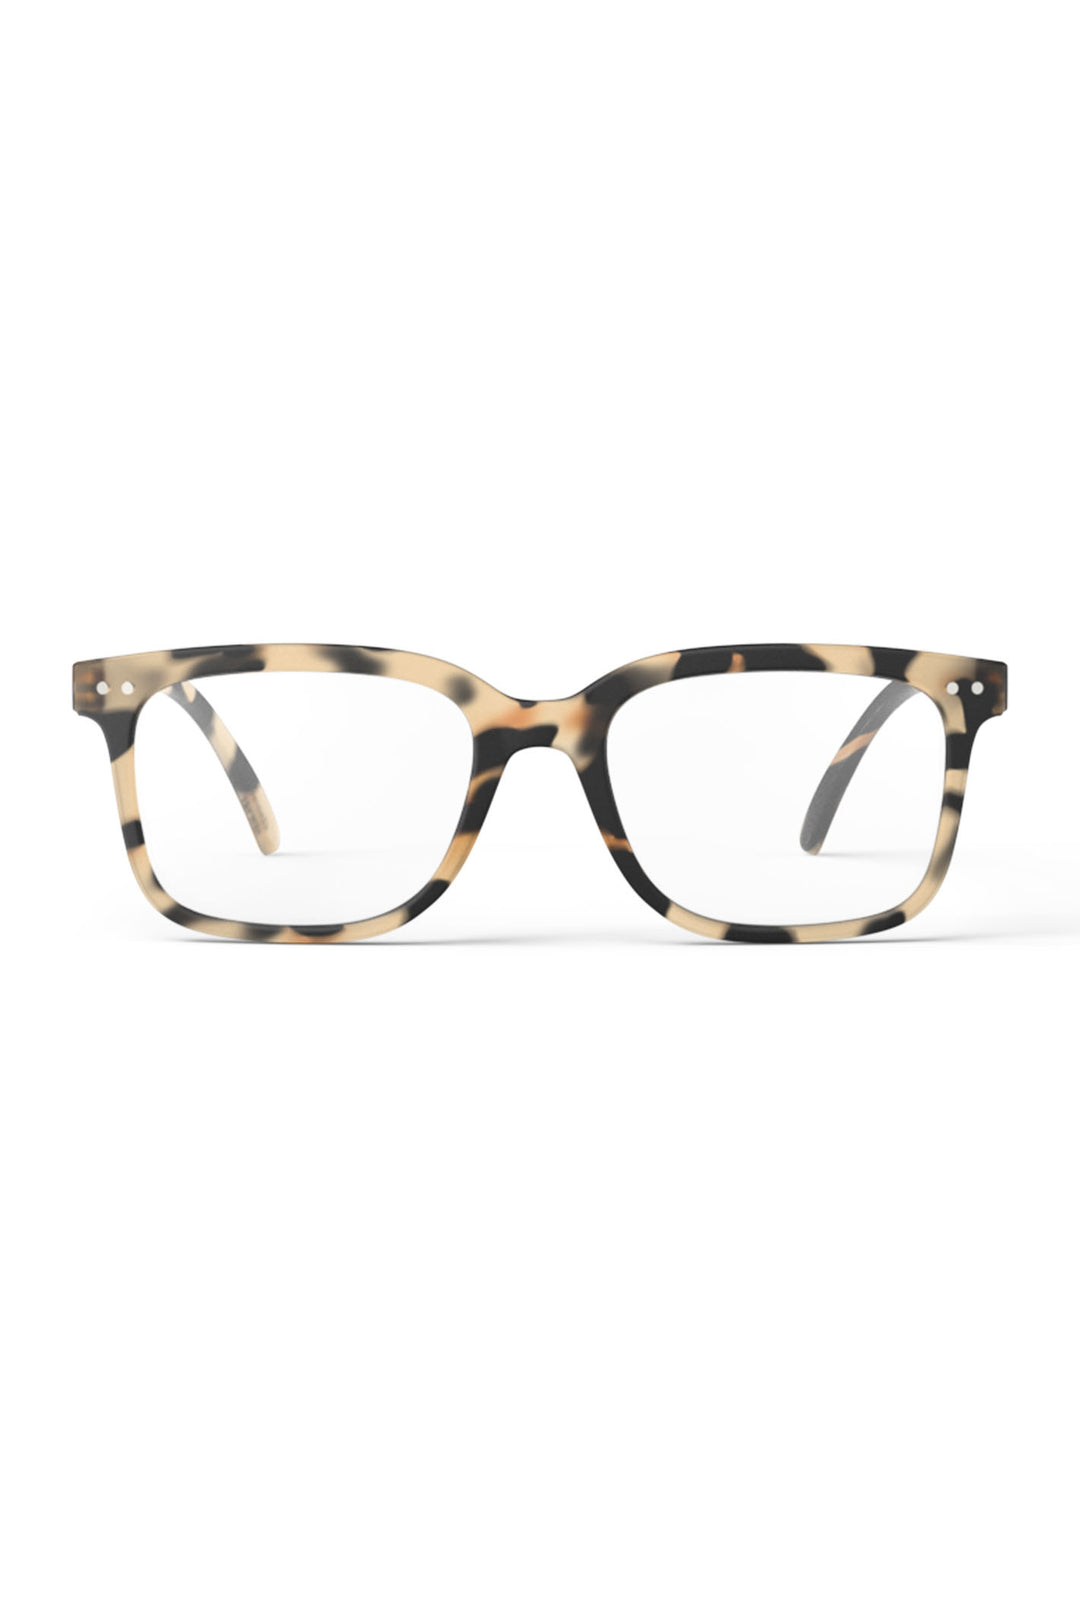 Izipizi Paris LMSLC69 Light Brown Tortoise Pattern Reading Glasses - Olivia Grace Fashion